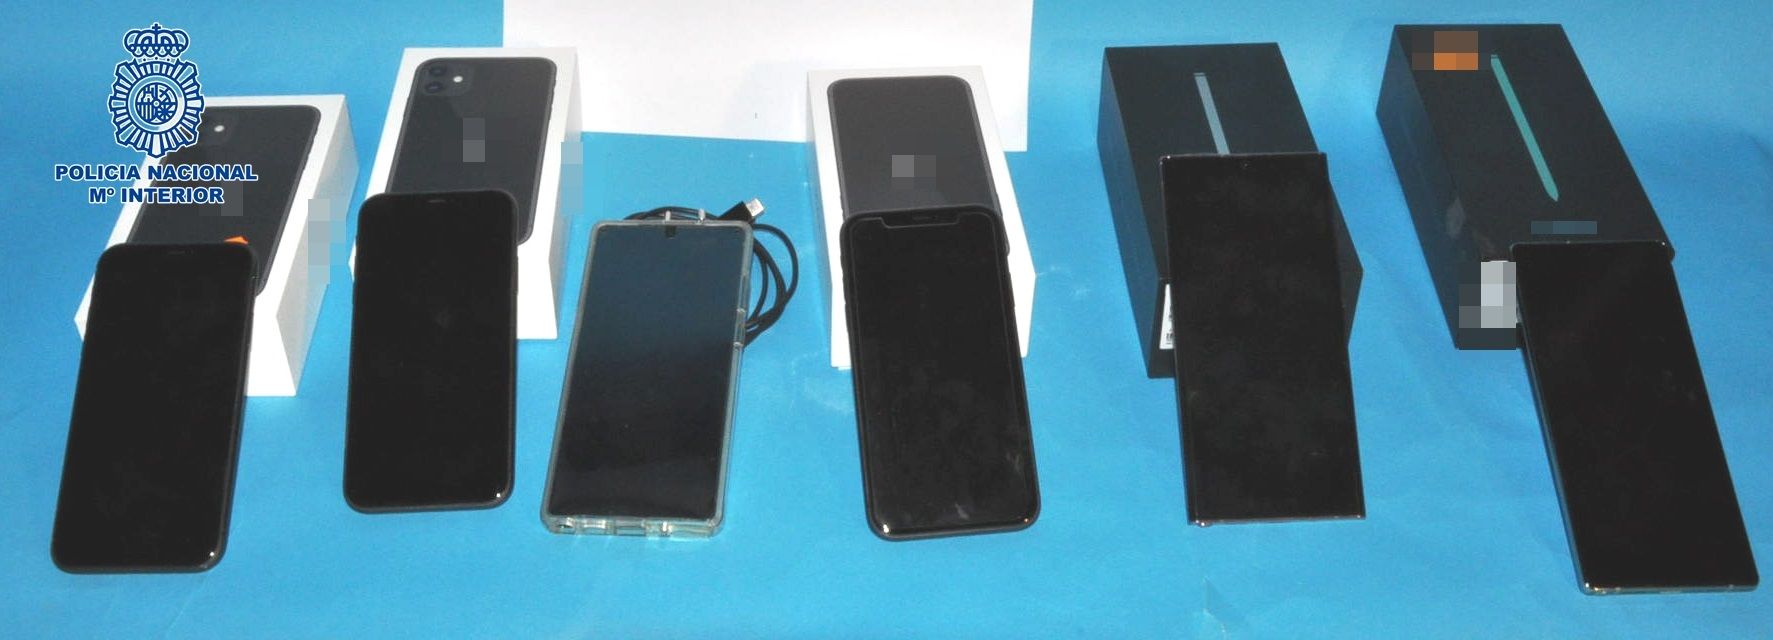 Imagen de los móviles recuperados tras ser detenidos los tres responsables